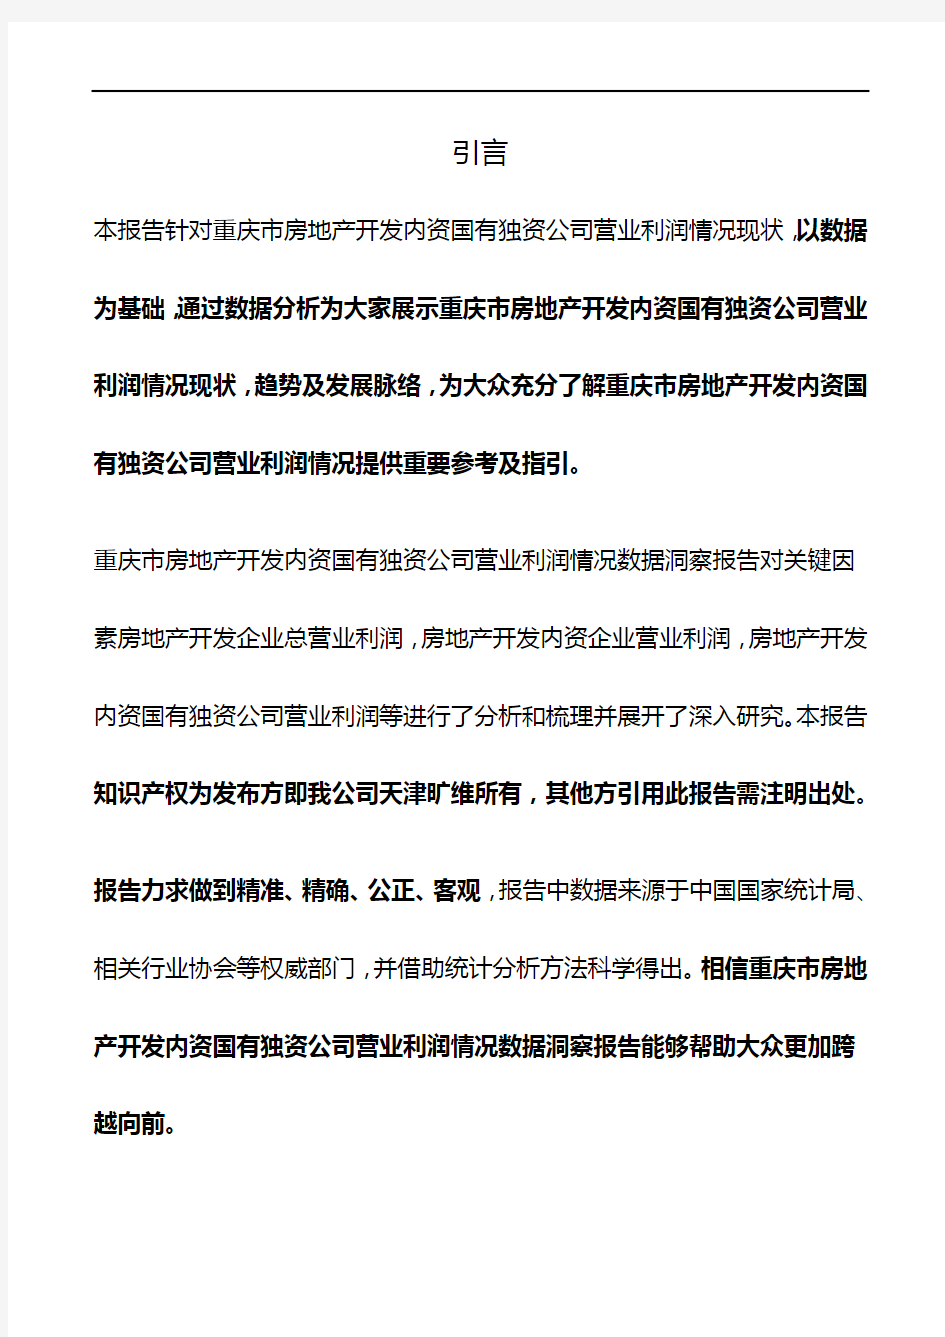 重庆市房地产开发内资国有独资公司营业利润情况3年数据洞察报告2019版